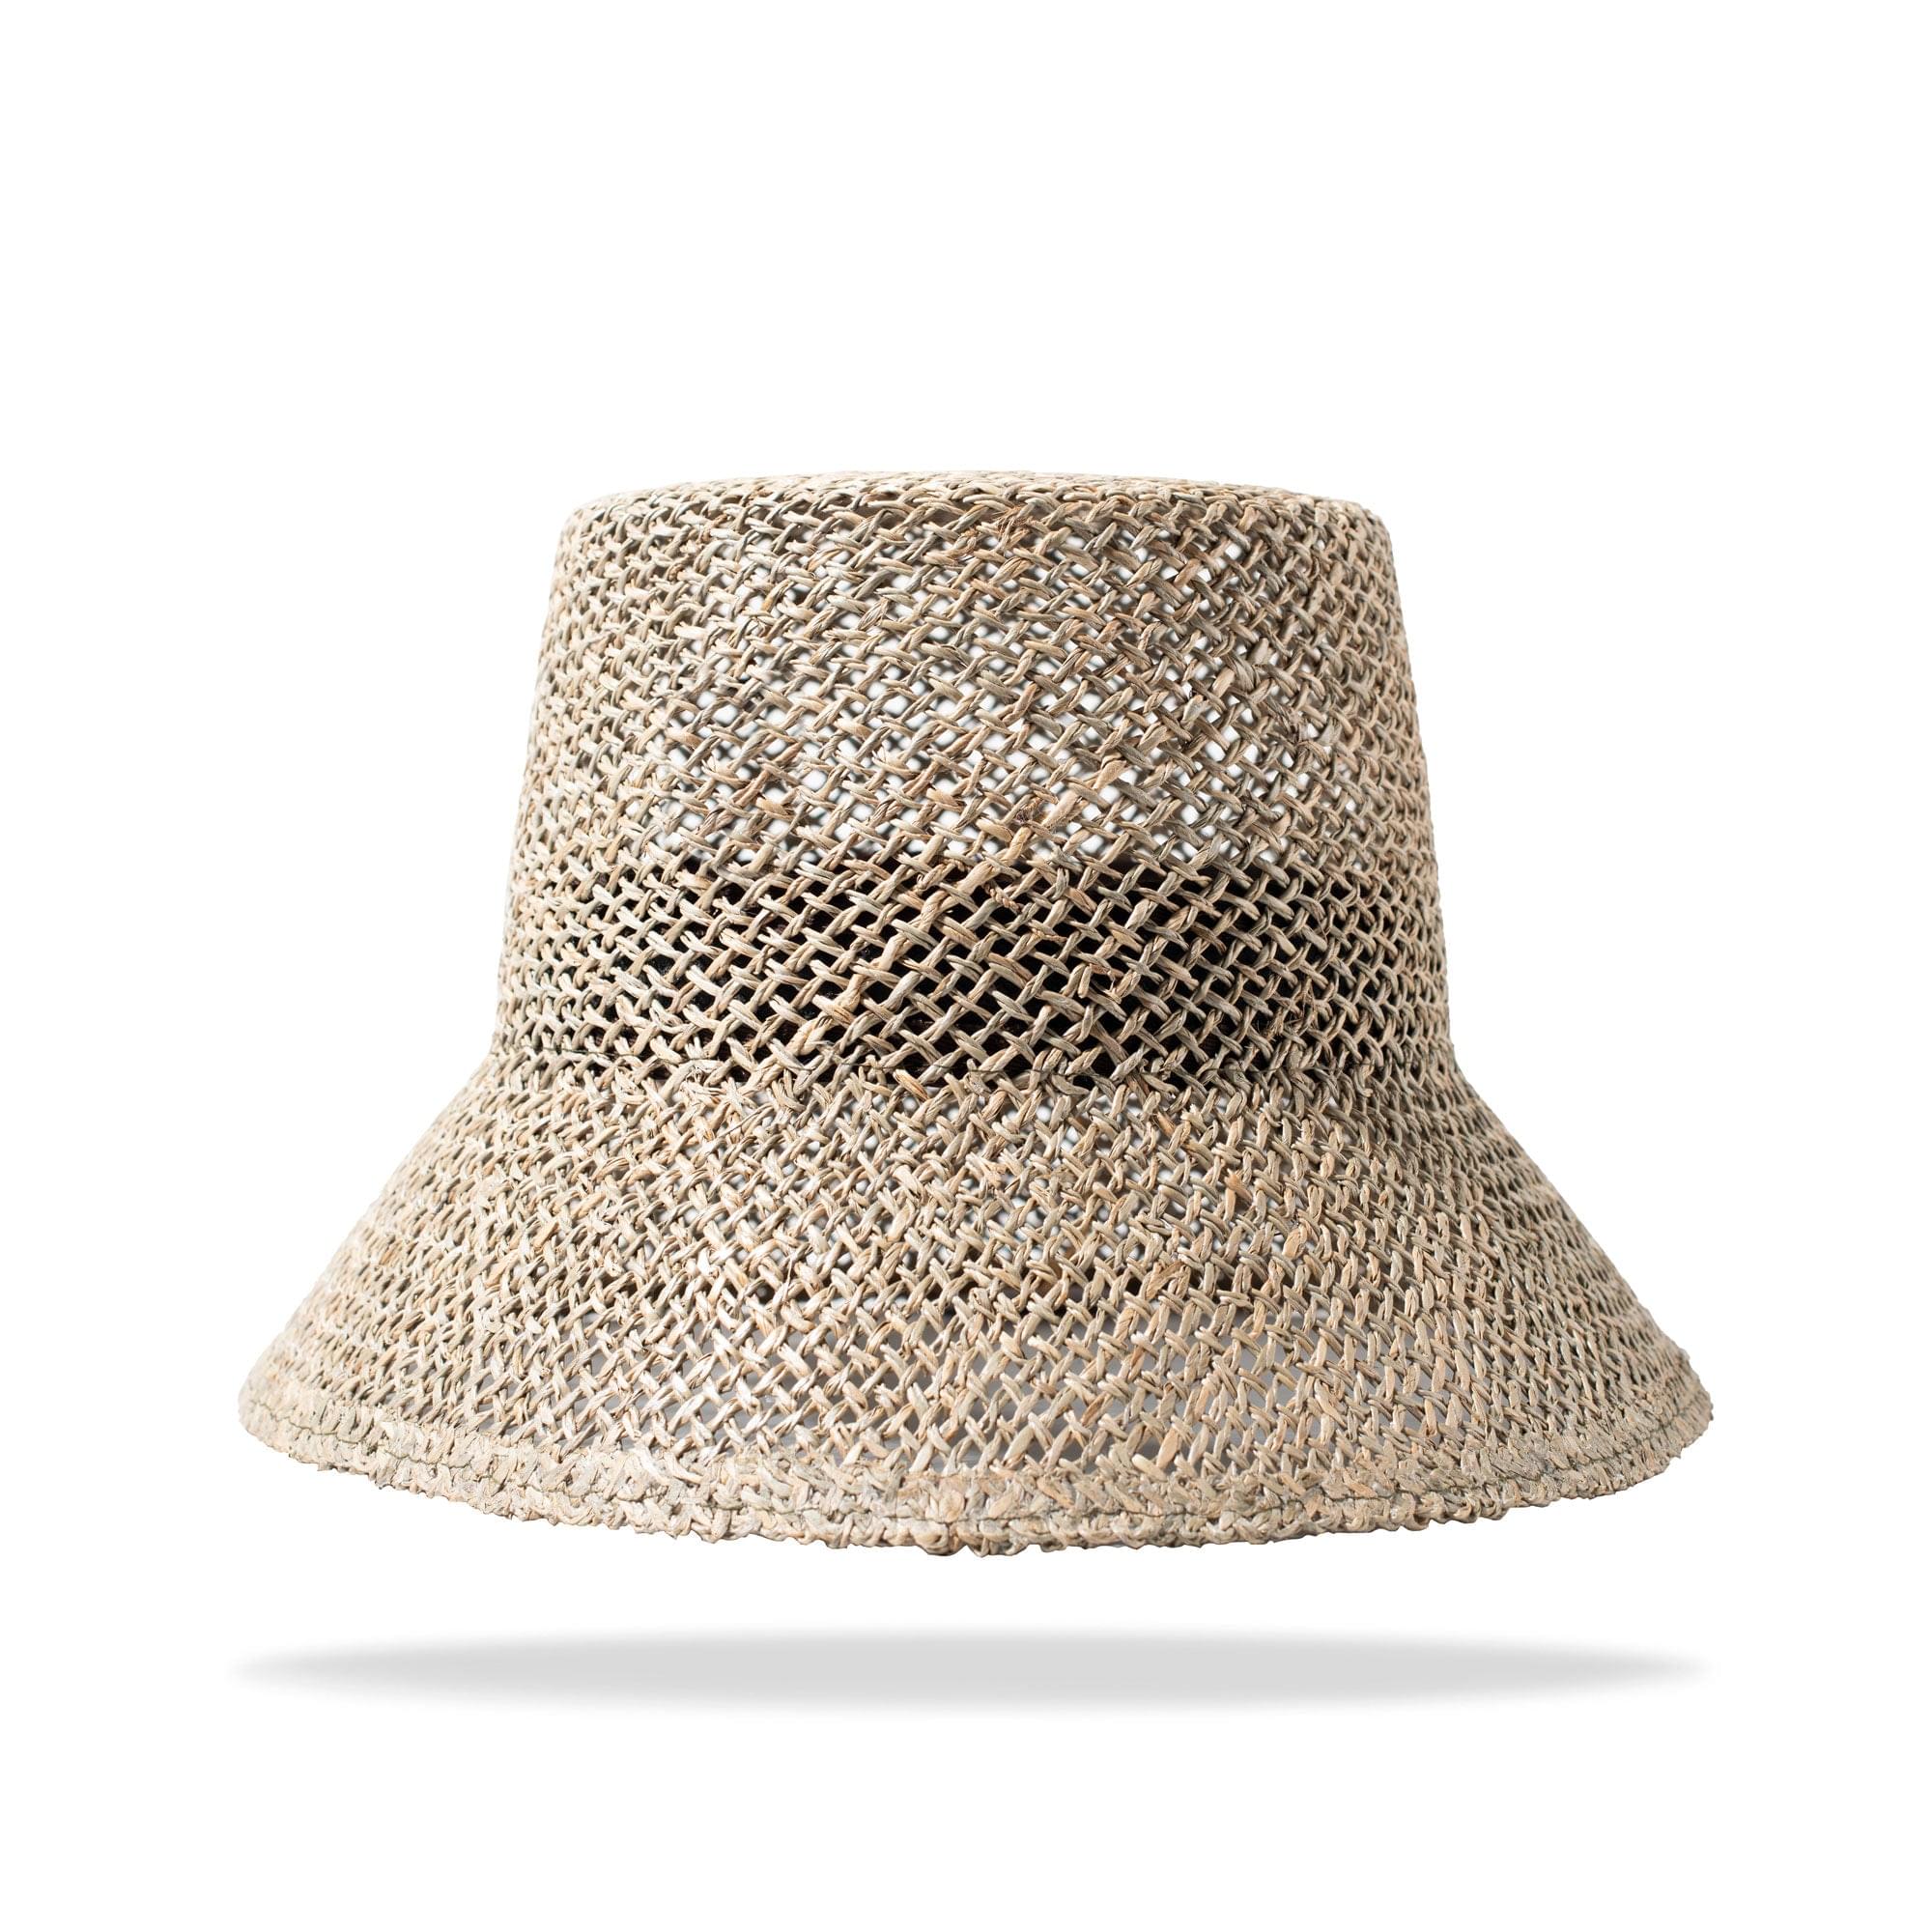 Algas Bucket Hat